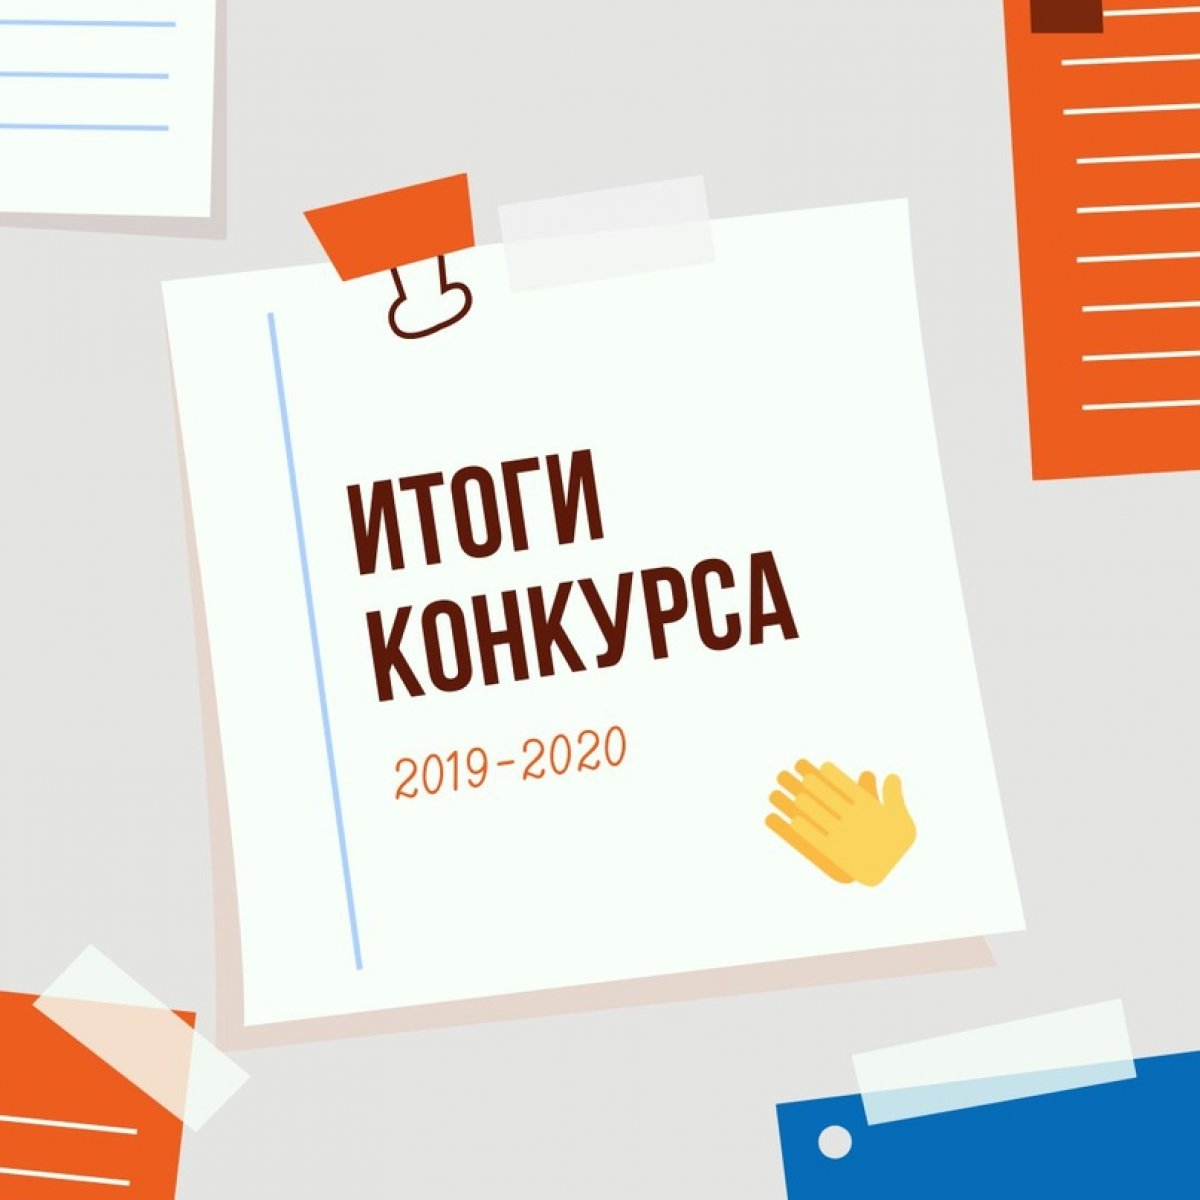 Подведены итоги Конкурса научных работ студентов ИМПЭ им. А.С. Грибоедова за 2019-2020 год.🏆